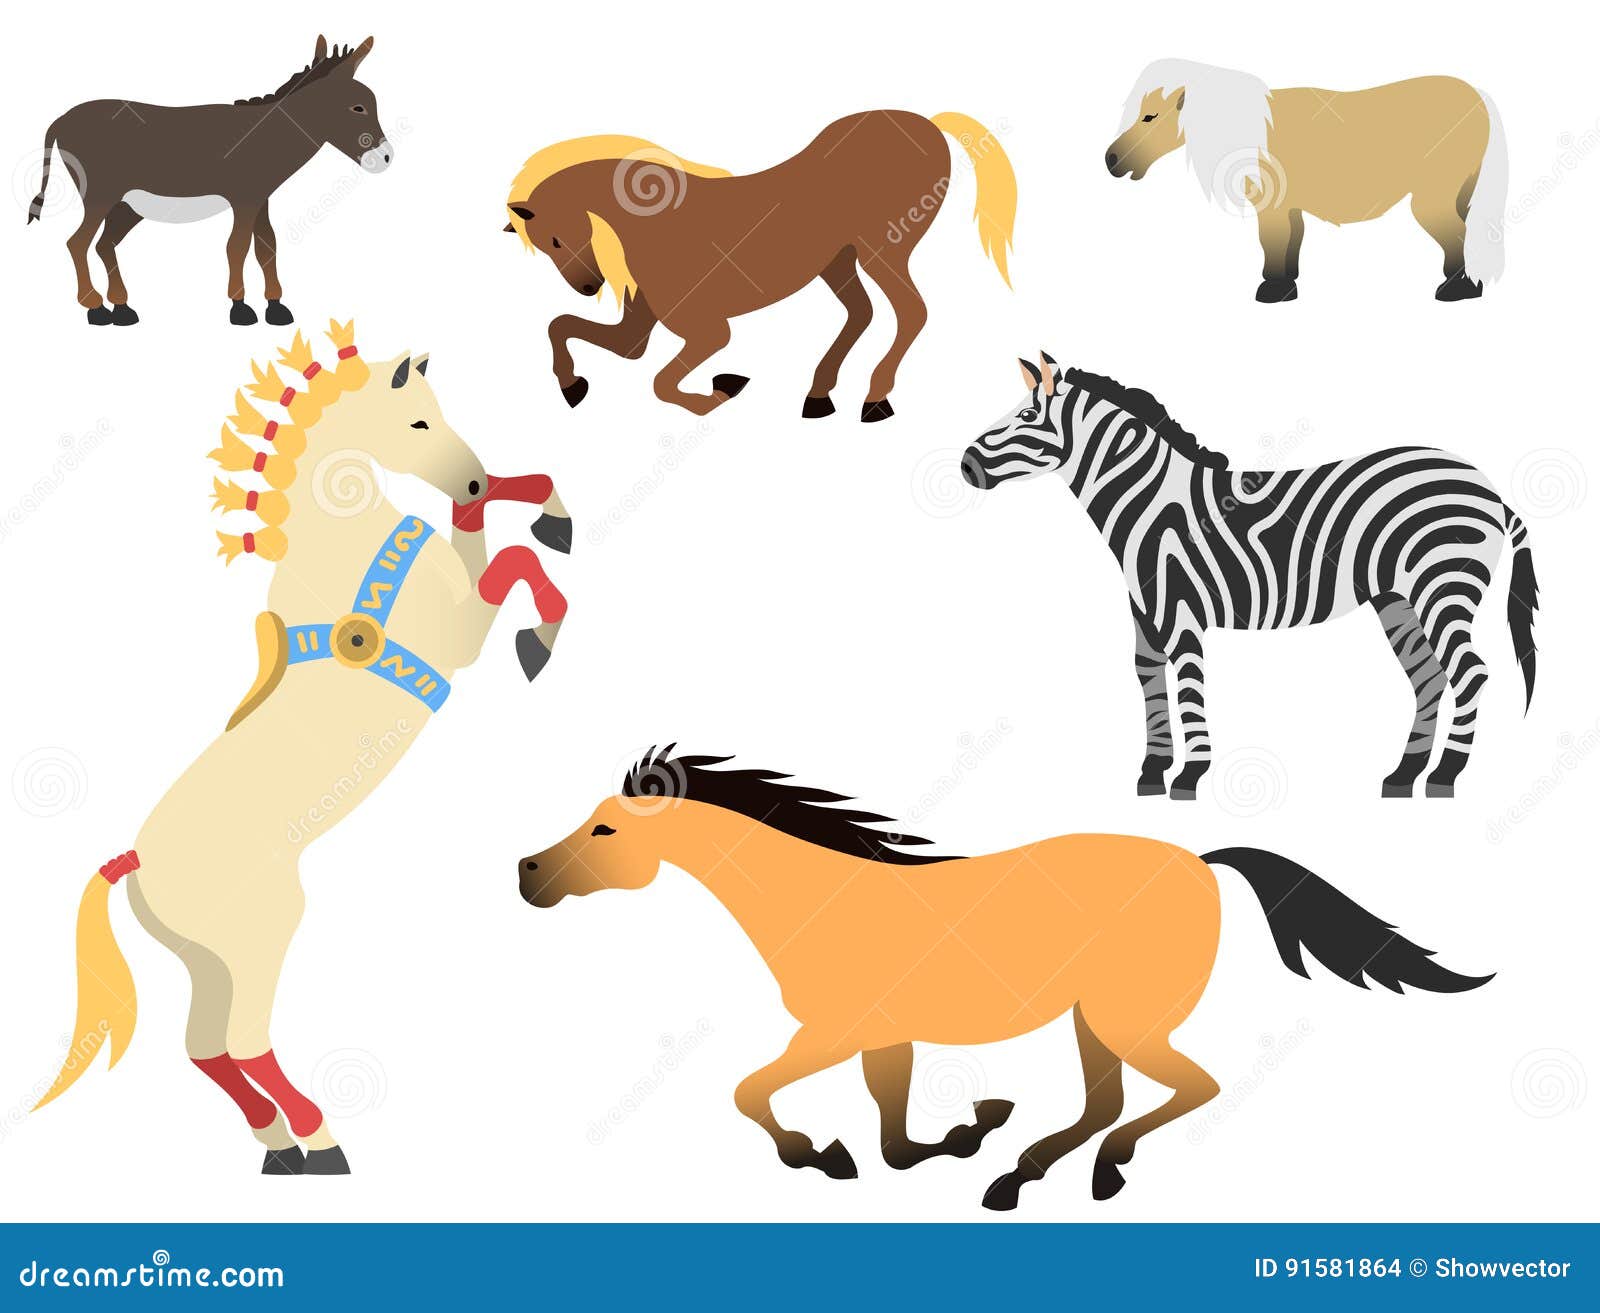 Qual a cor do seu cavalo? - Equestre Online